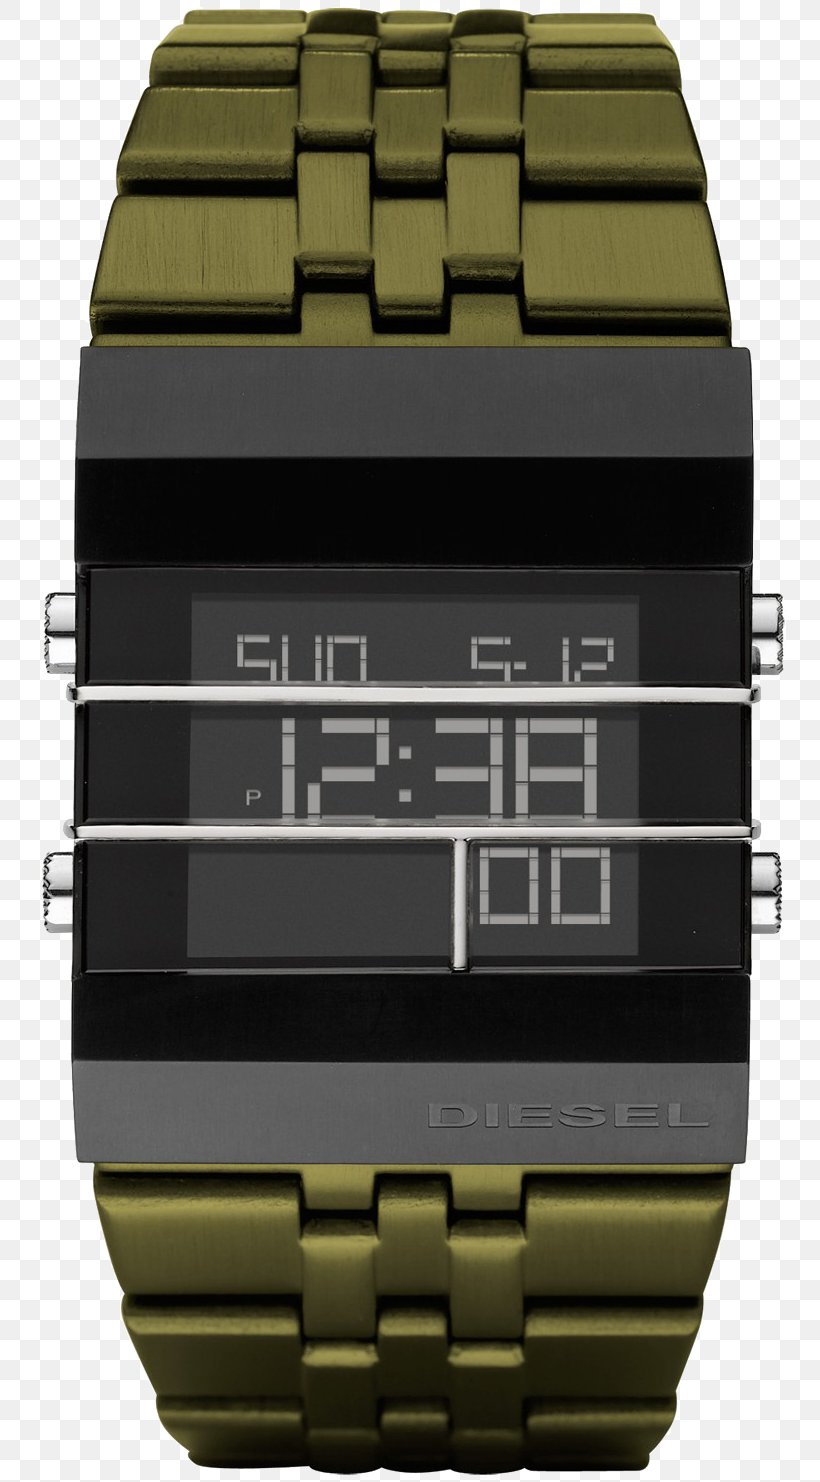 Diesel Apple Watch Series 2 Steel Bracelet, PNG, 753x1482px, Diesel, Apple Watch Series 2, Bracelet, Brand, Digital Clock Download Free